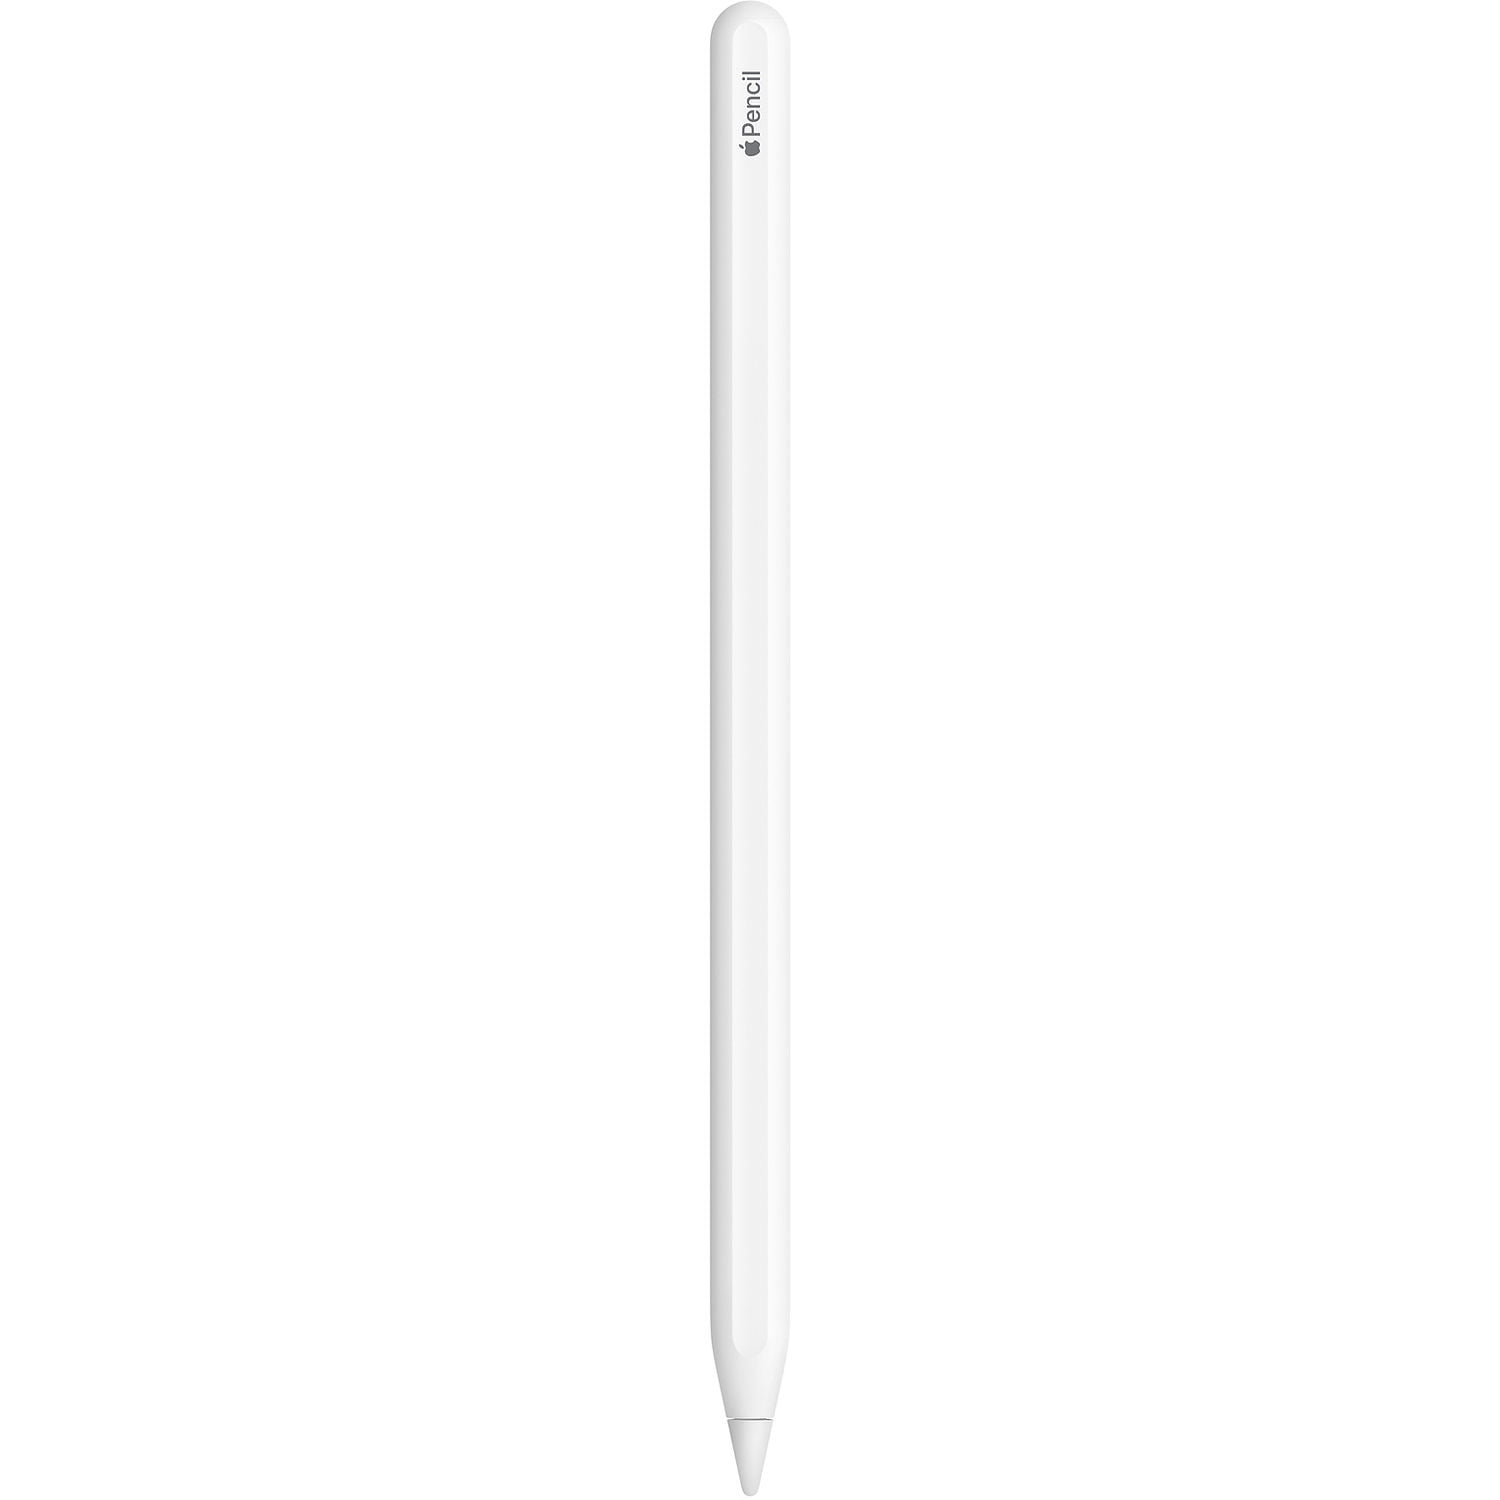 Apple pencil 2nd Gen $89